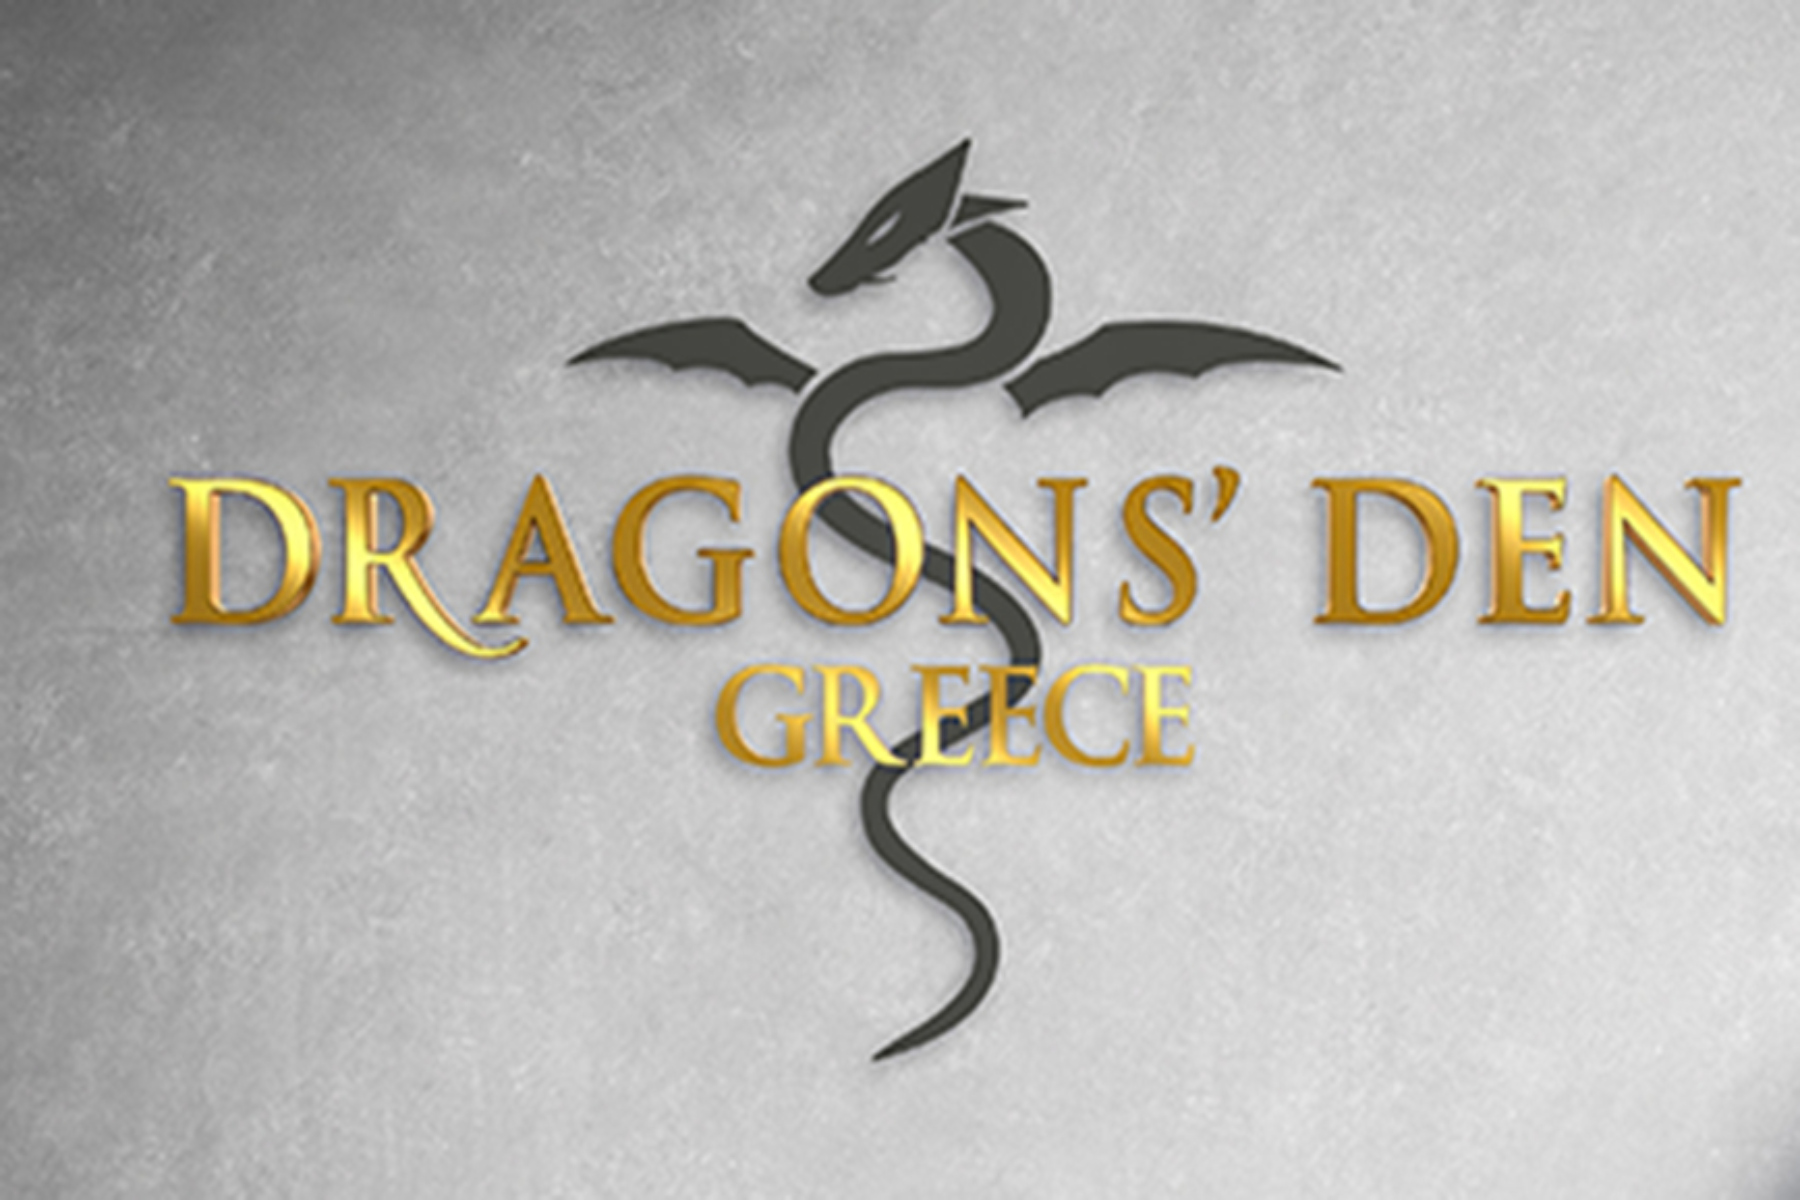 DRAGONS’ DEN GREECE: Τι θα δούμε στο σημερινό επεισόδιο του Dragons΄den;